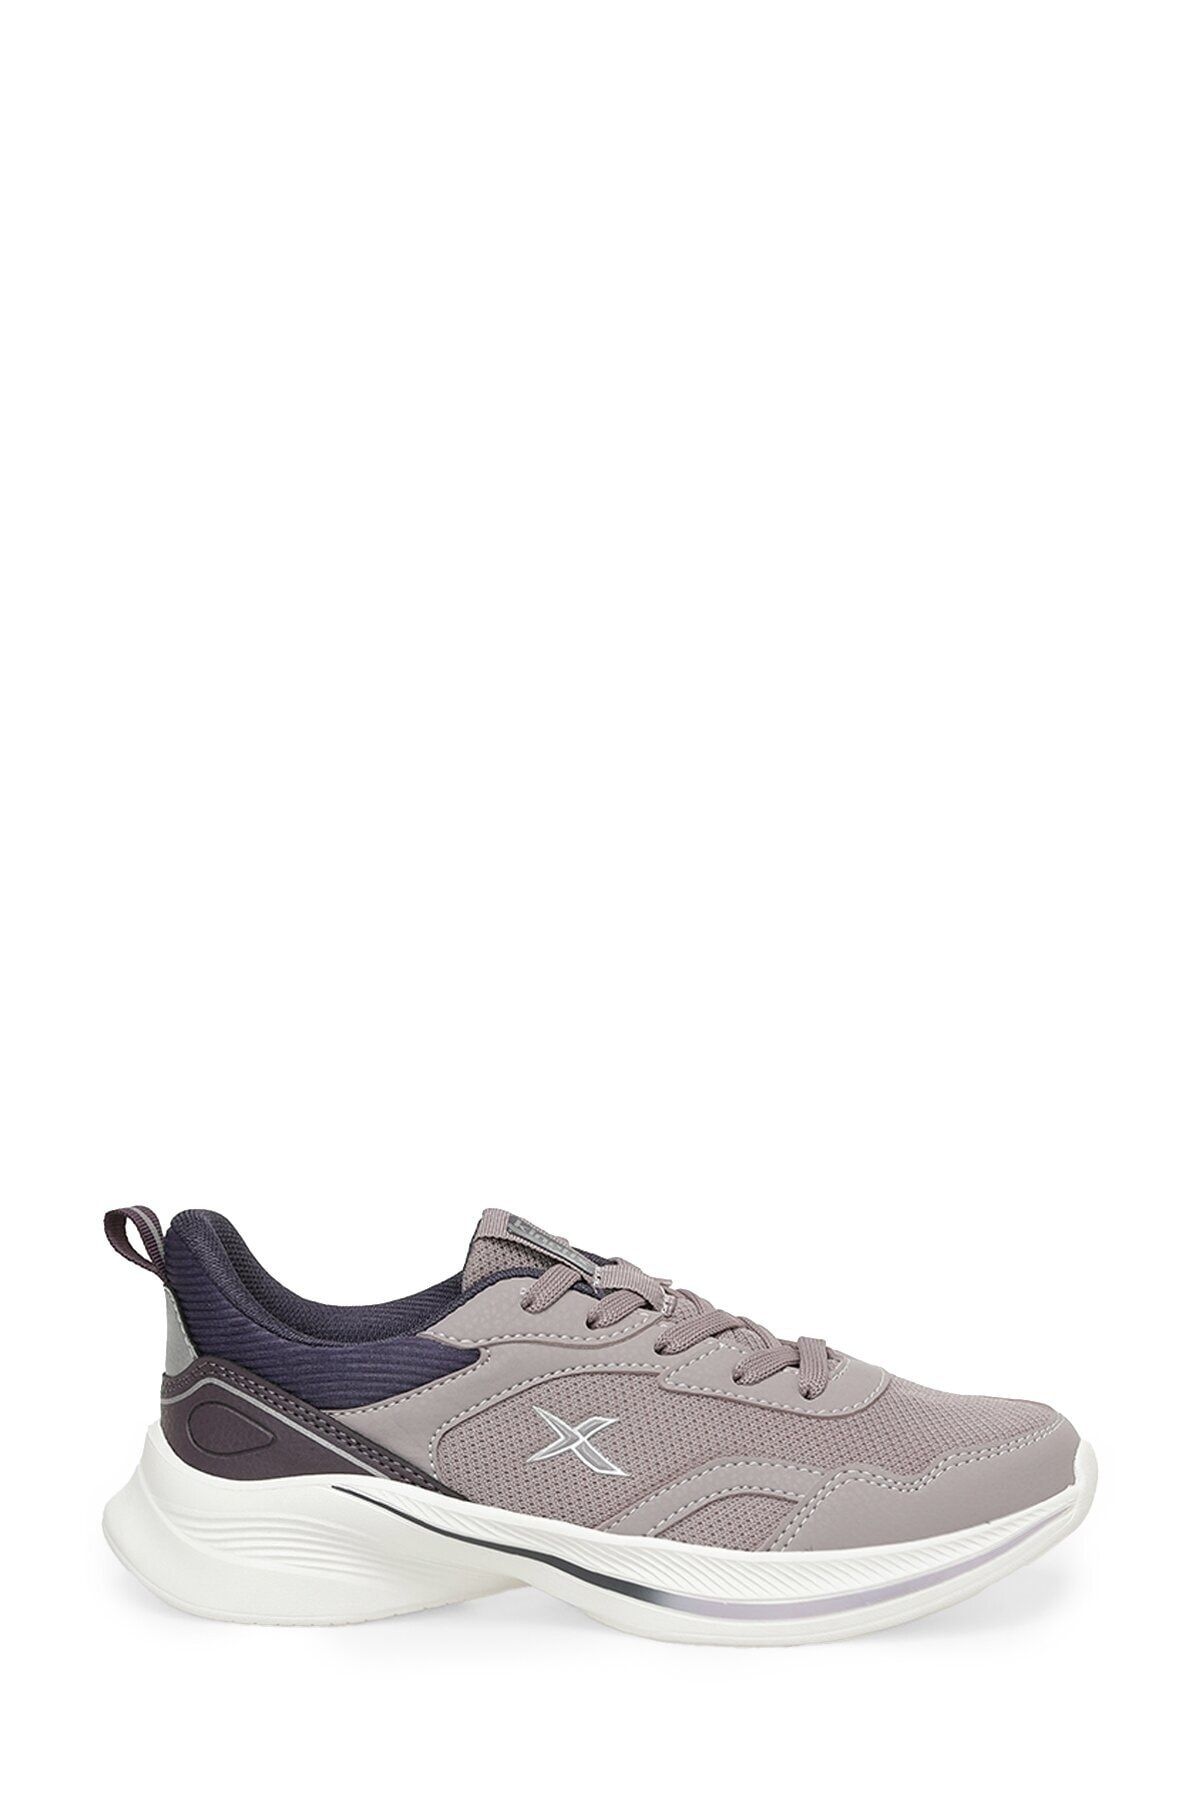 Kinetix Rıeda Tx W 3fx Pembe Kadın Koşu Ayakkabısı